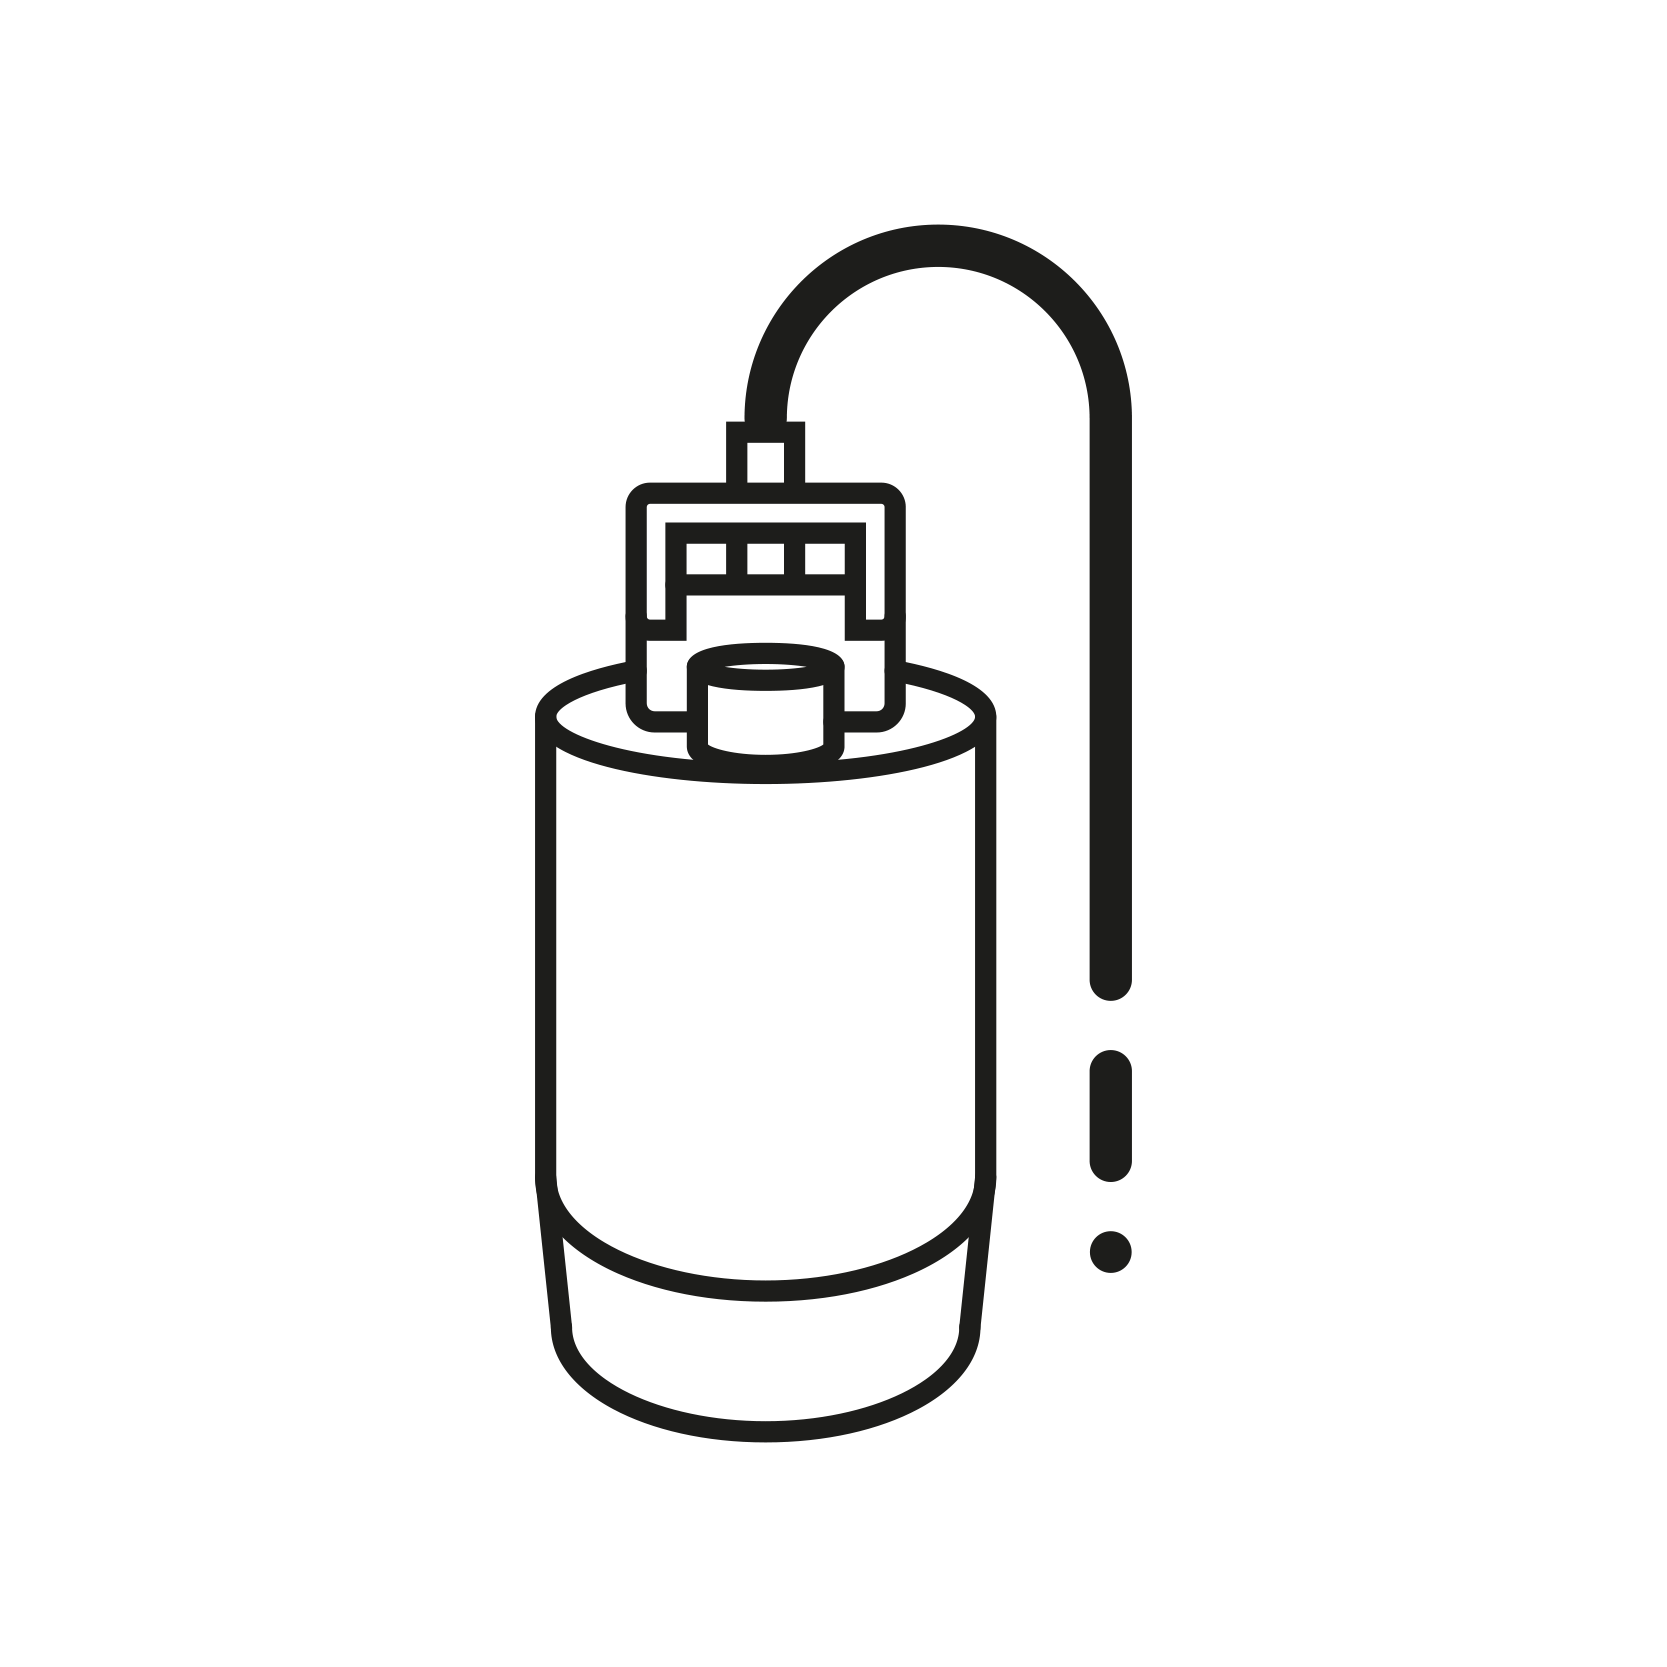 pompa rozladunkowa do separacji wiorow opilkow od chlodziwa i oleju do odkurzaczy przemysłowych